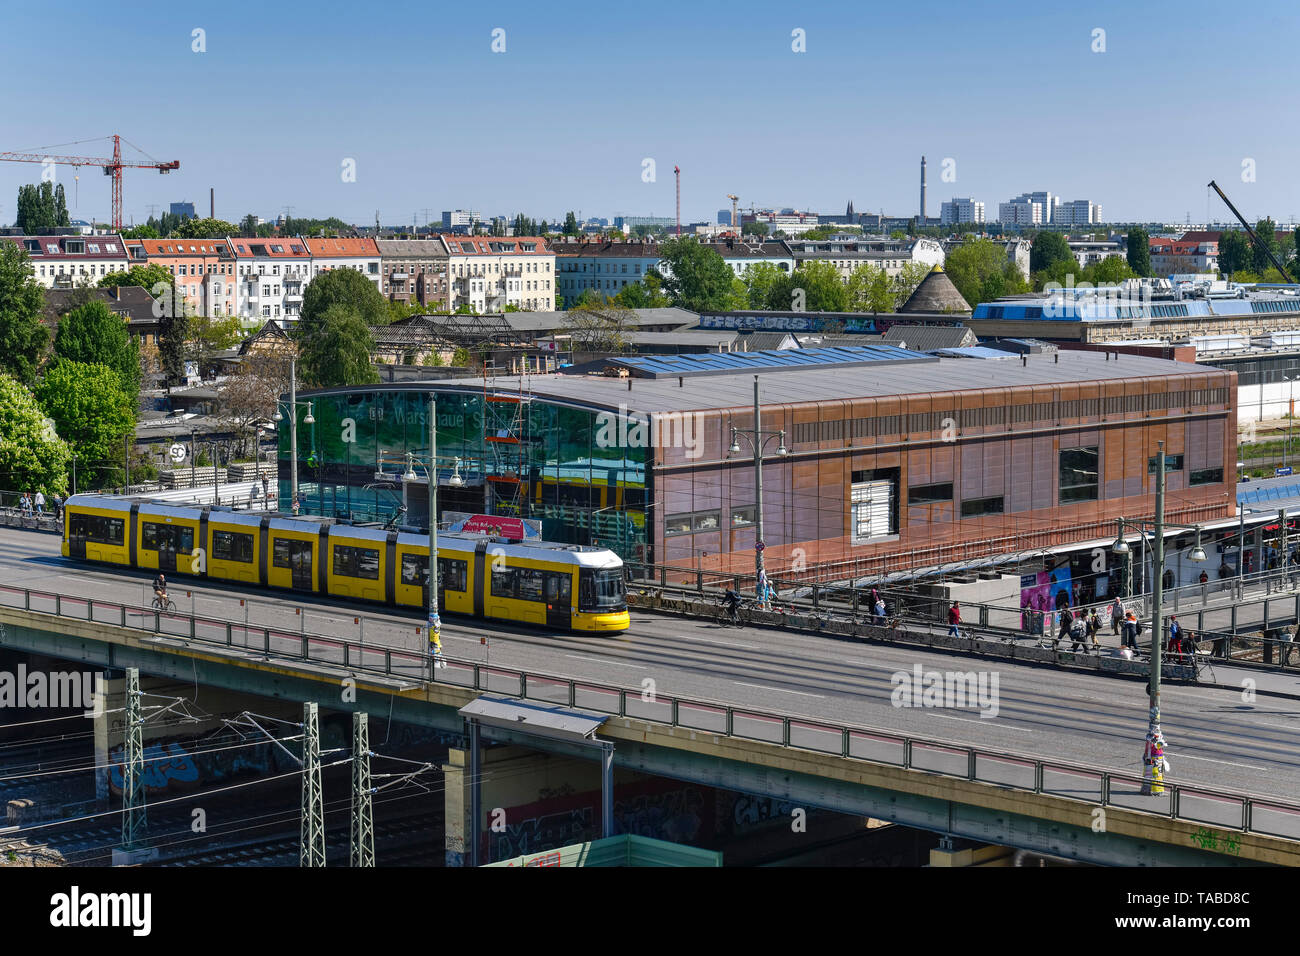 La station de chemin de fer rue de Varsovie, Friedrich's Grove, Berlin, Allemagne, Bahnhof Warschauer Straße, Friedrichshain, Deutschland Banque D'Images